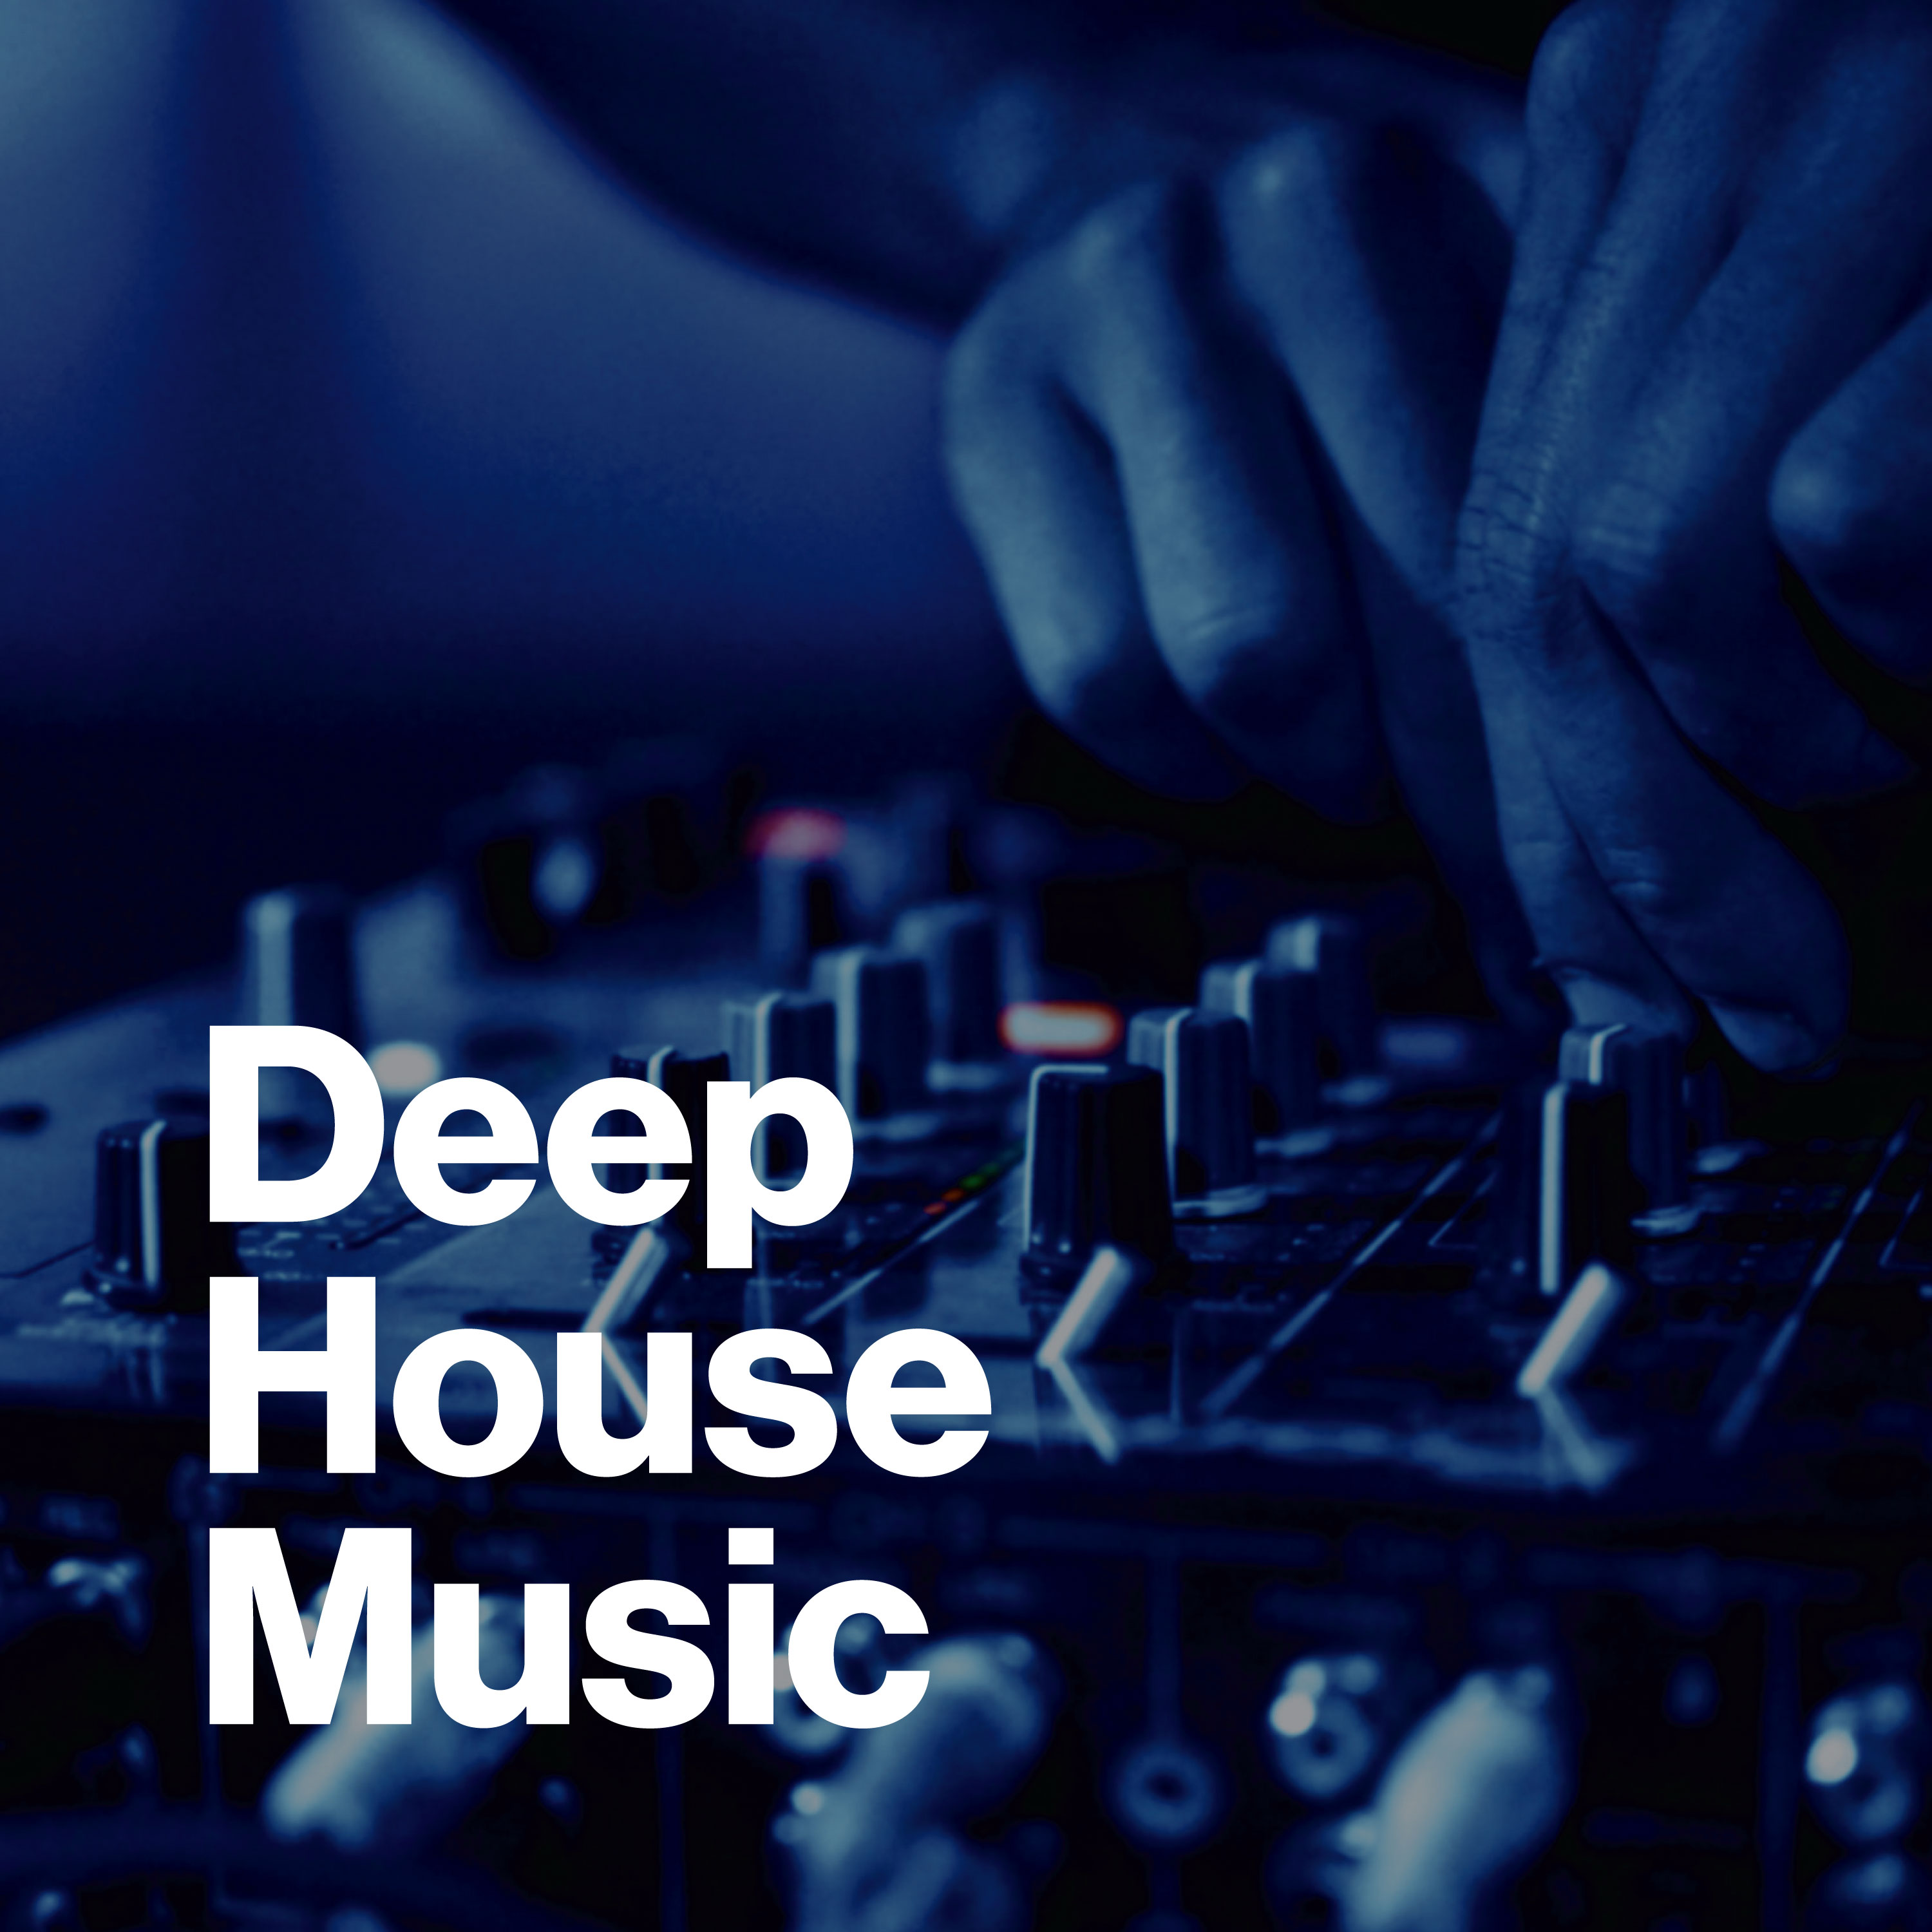 Deep house new. Дип Хаус. Deep House Music. Фото Deep House Music. Deep House обложка альбома.